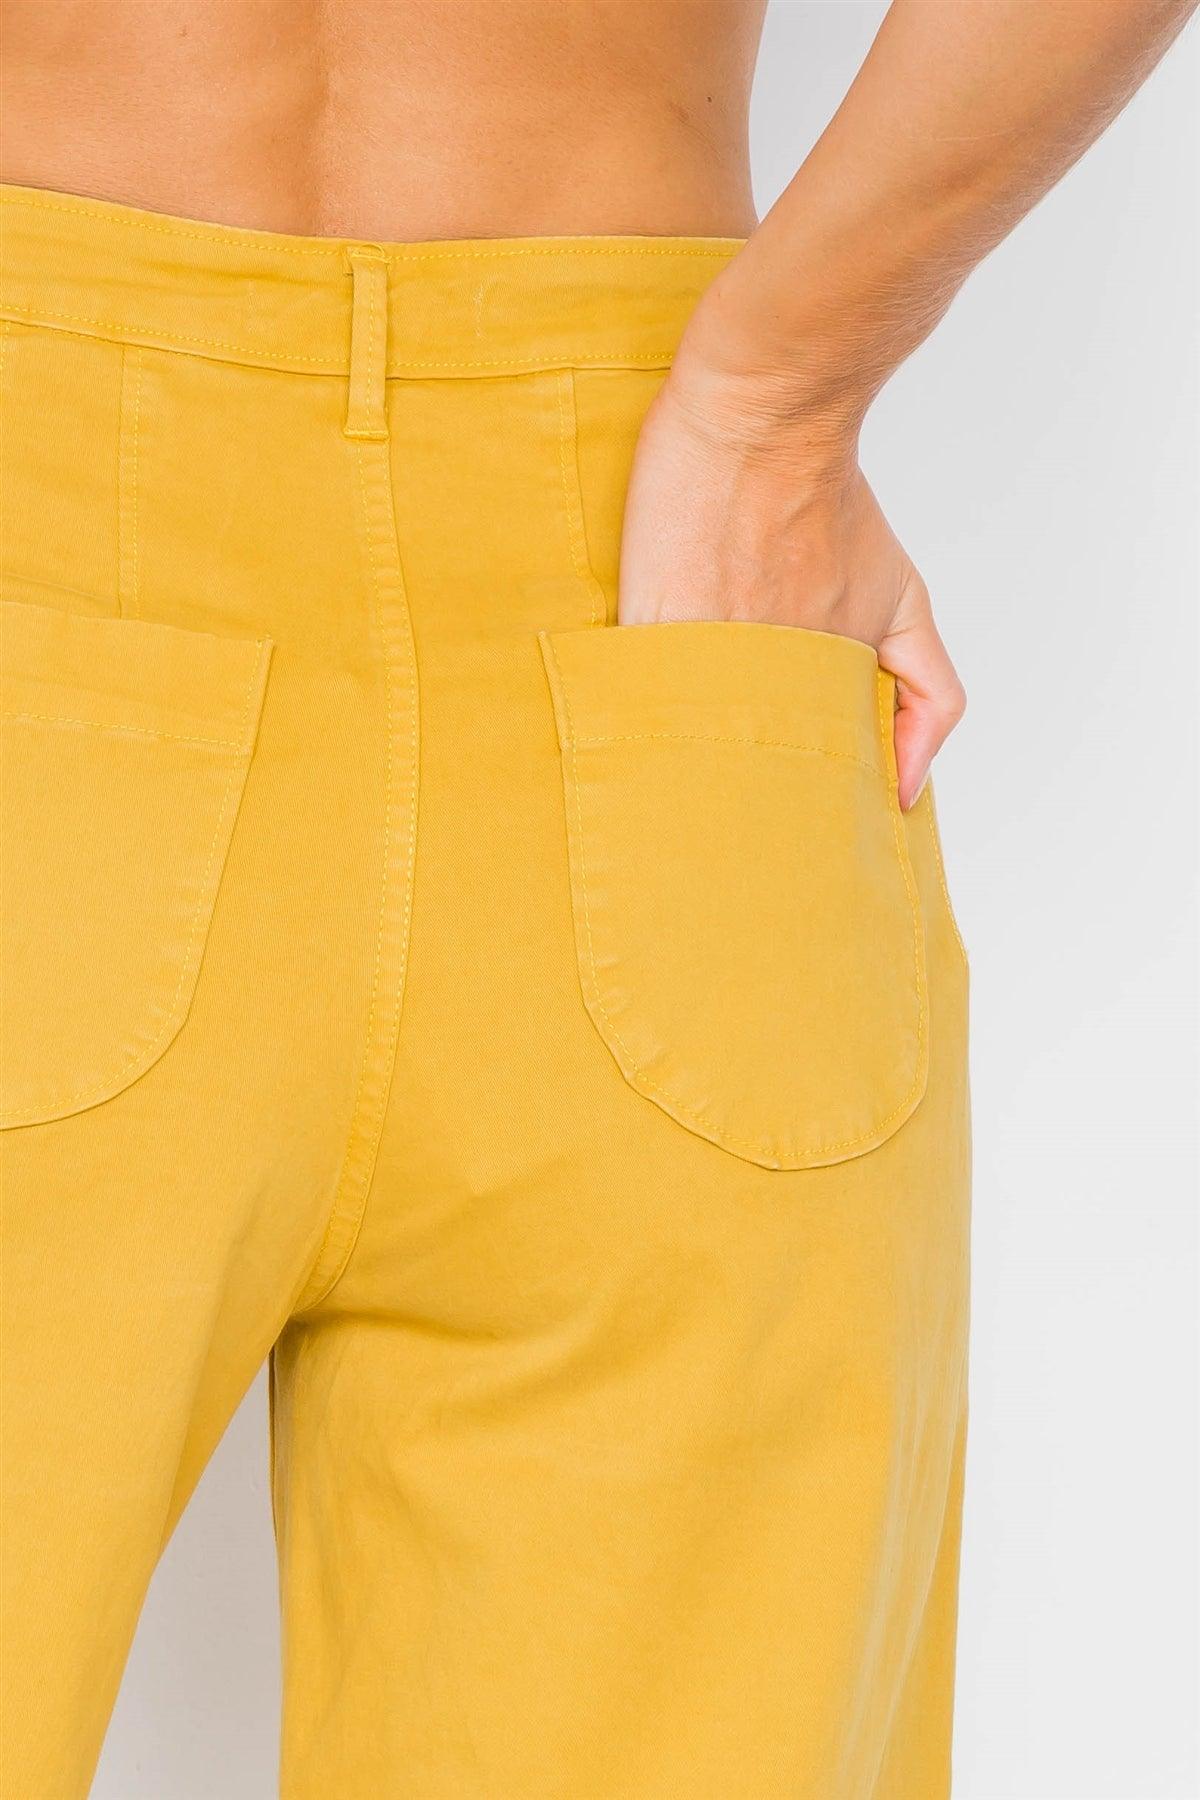 Mustard Yellow Hipster High Waist Gaucho Pants /3-2-1